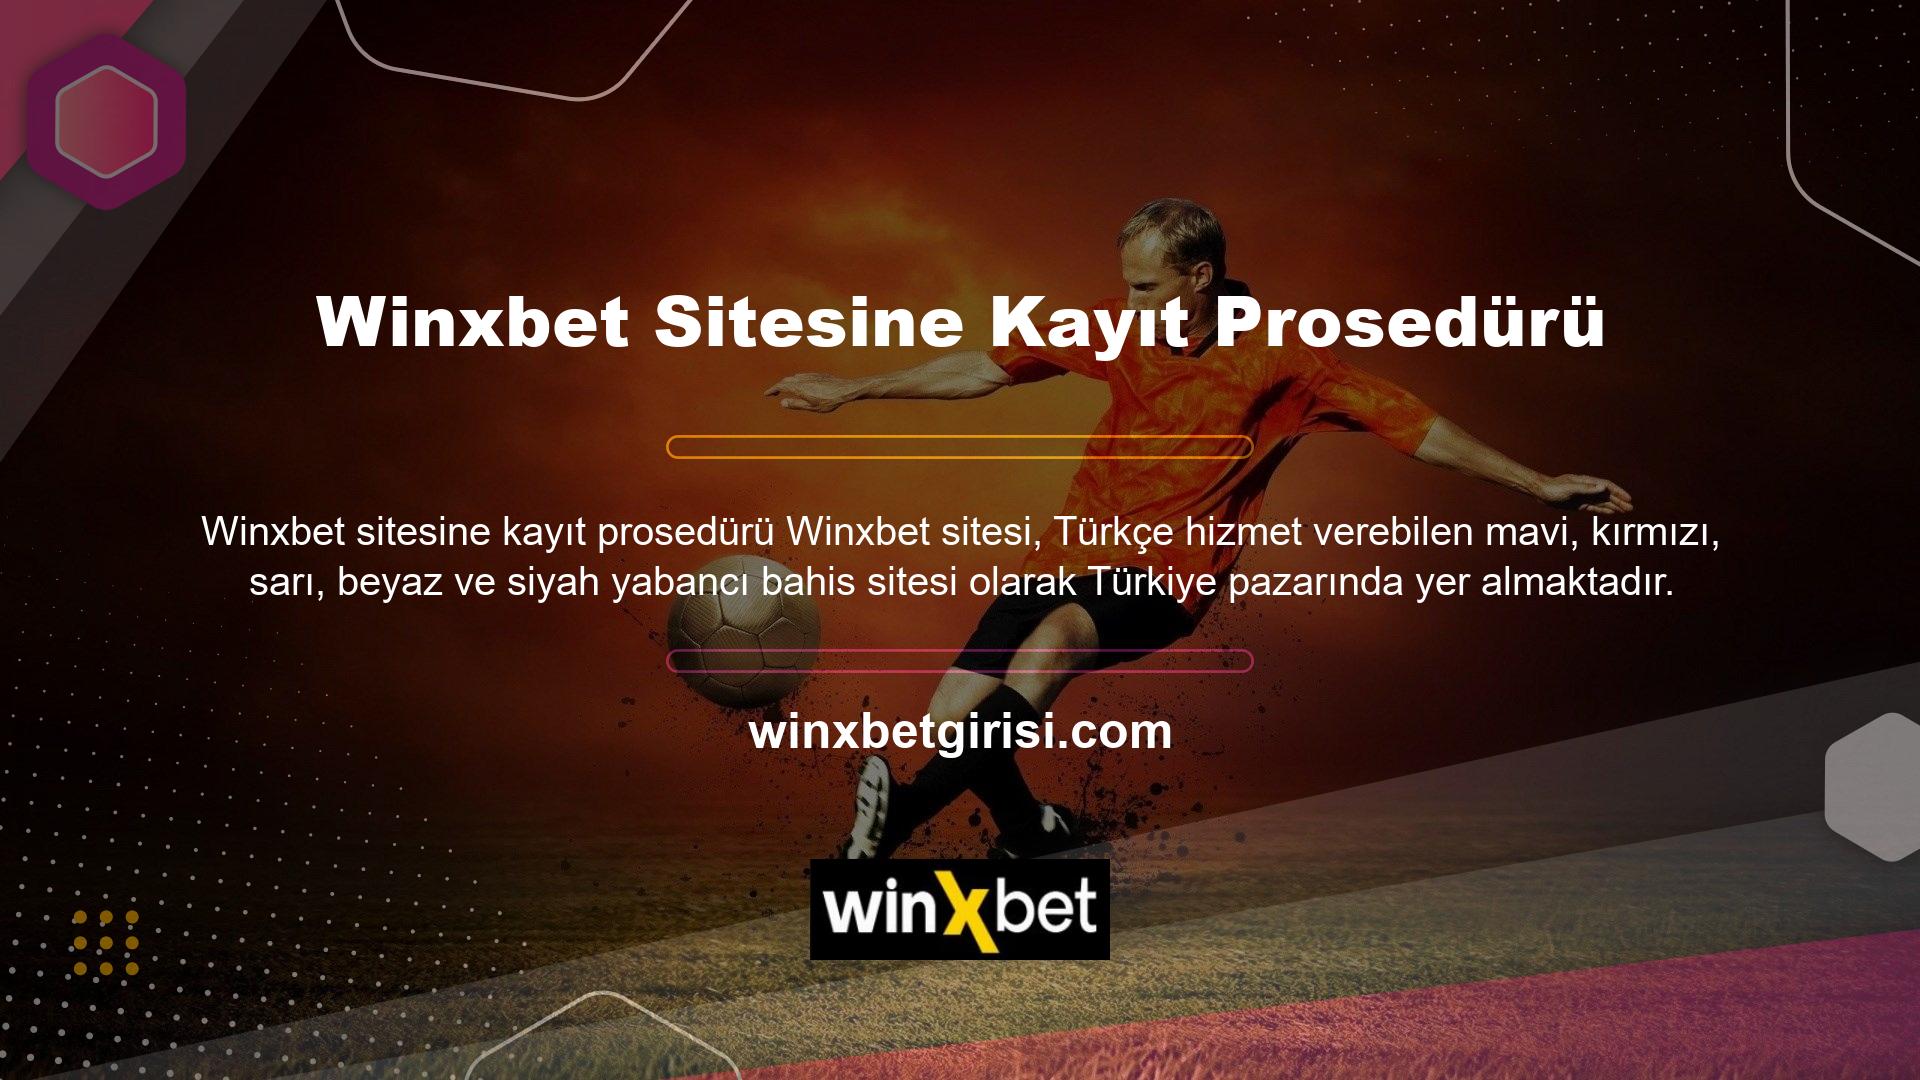 Bu web sitesi uluslararası casino pazarında yasal statüye sahip olmasına rağmen, Türkiye pazarında yabancı casino sitesi olarak tanımlanmaktadır ve bu özellikler Winxbet web sitesindeki üye işlemlerine erişmenizi engelleyebilmektedir